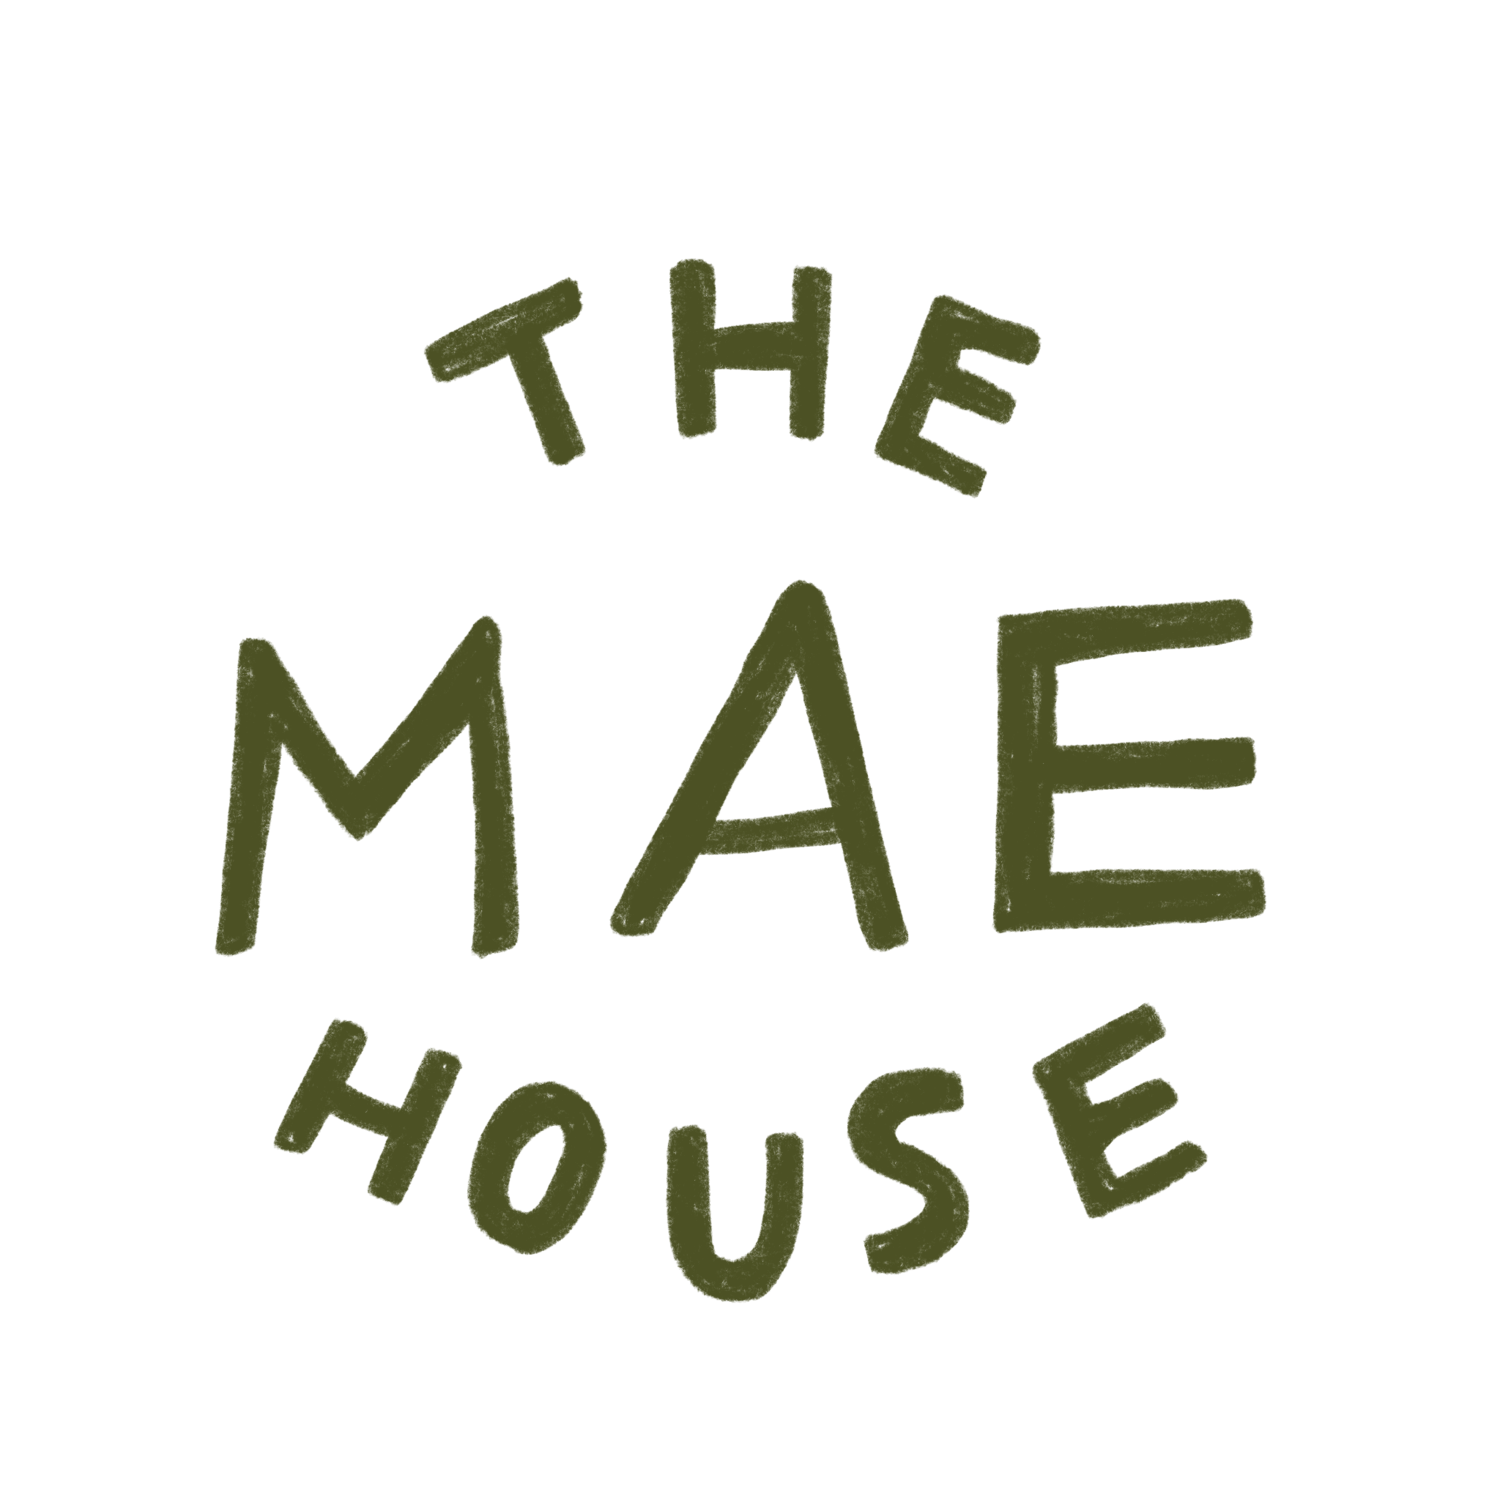 The Mae House